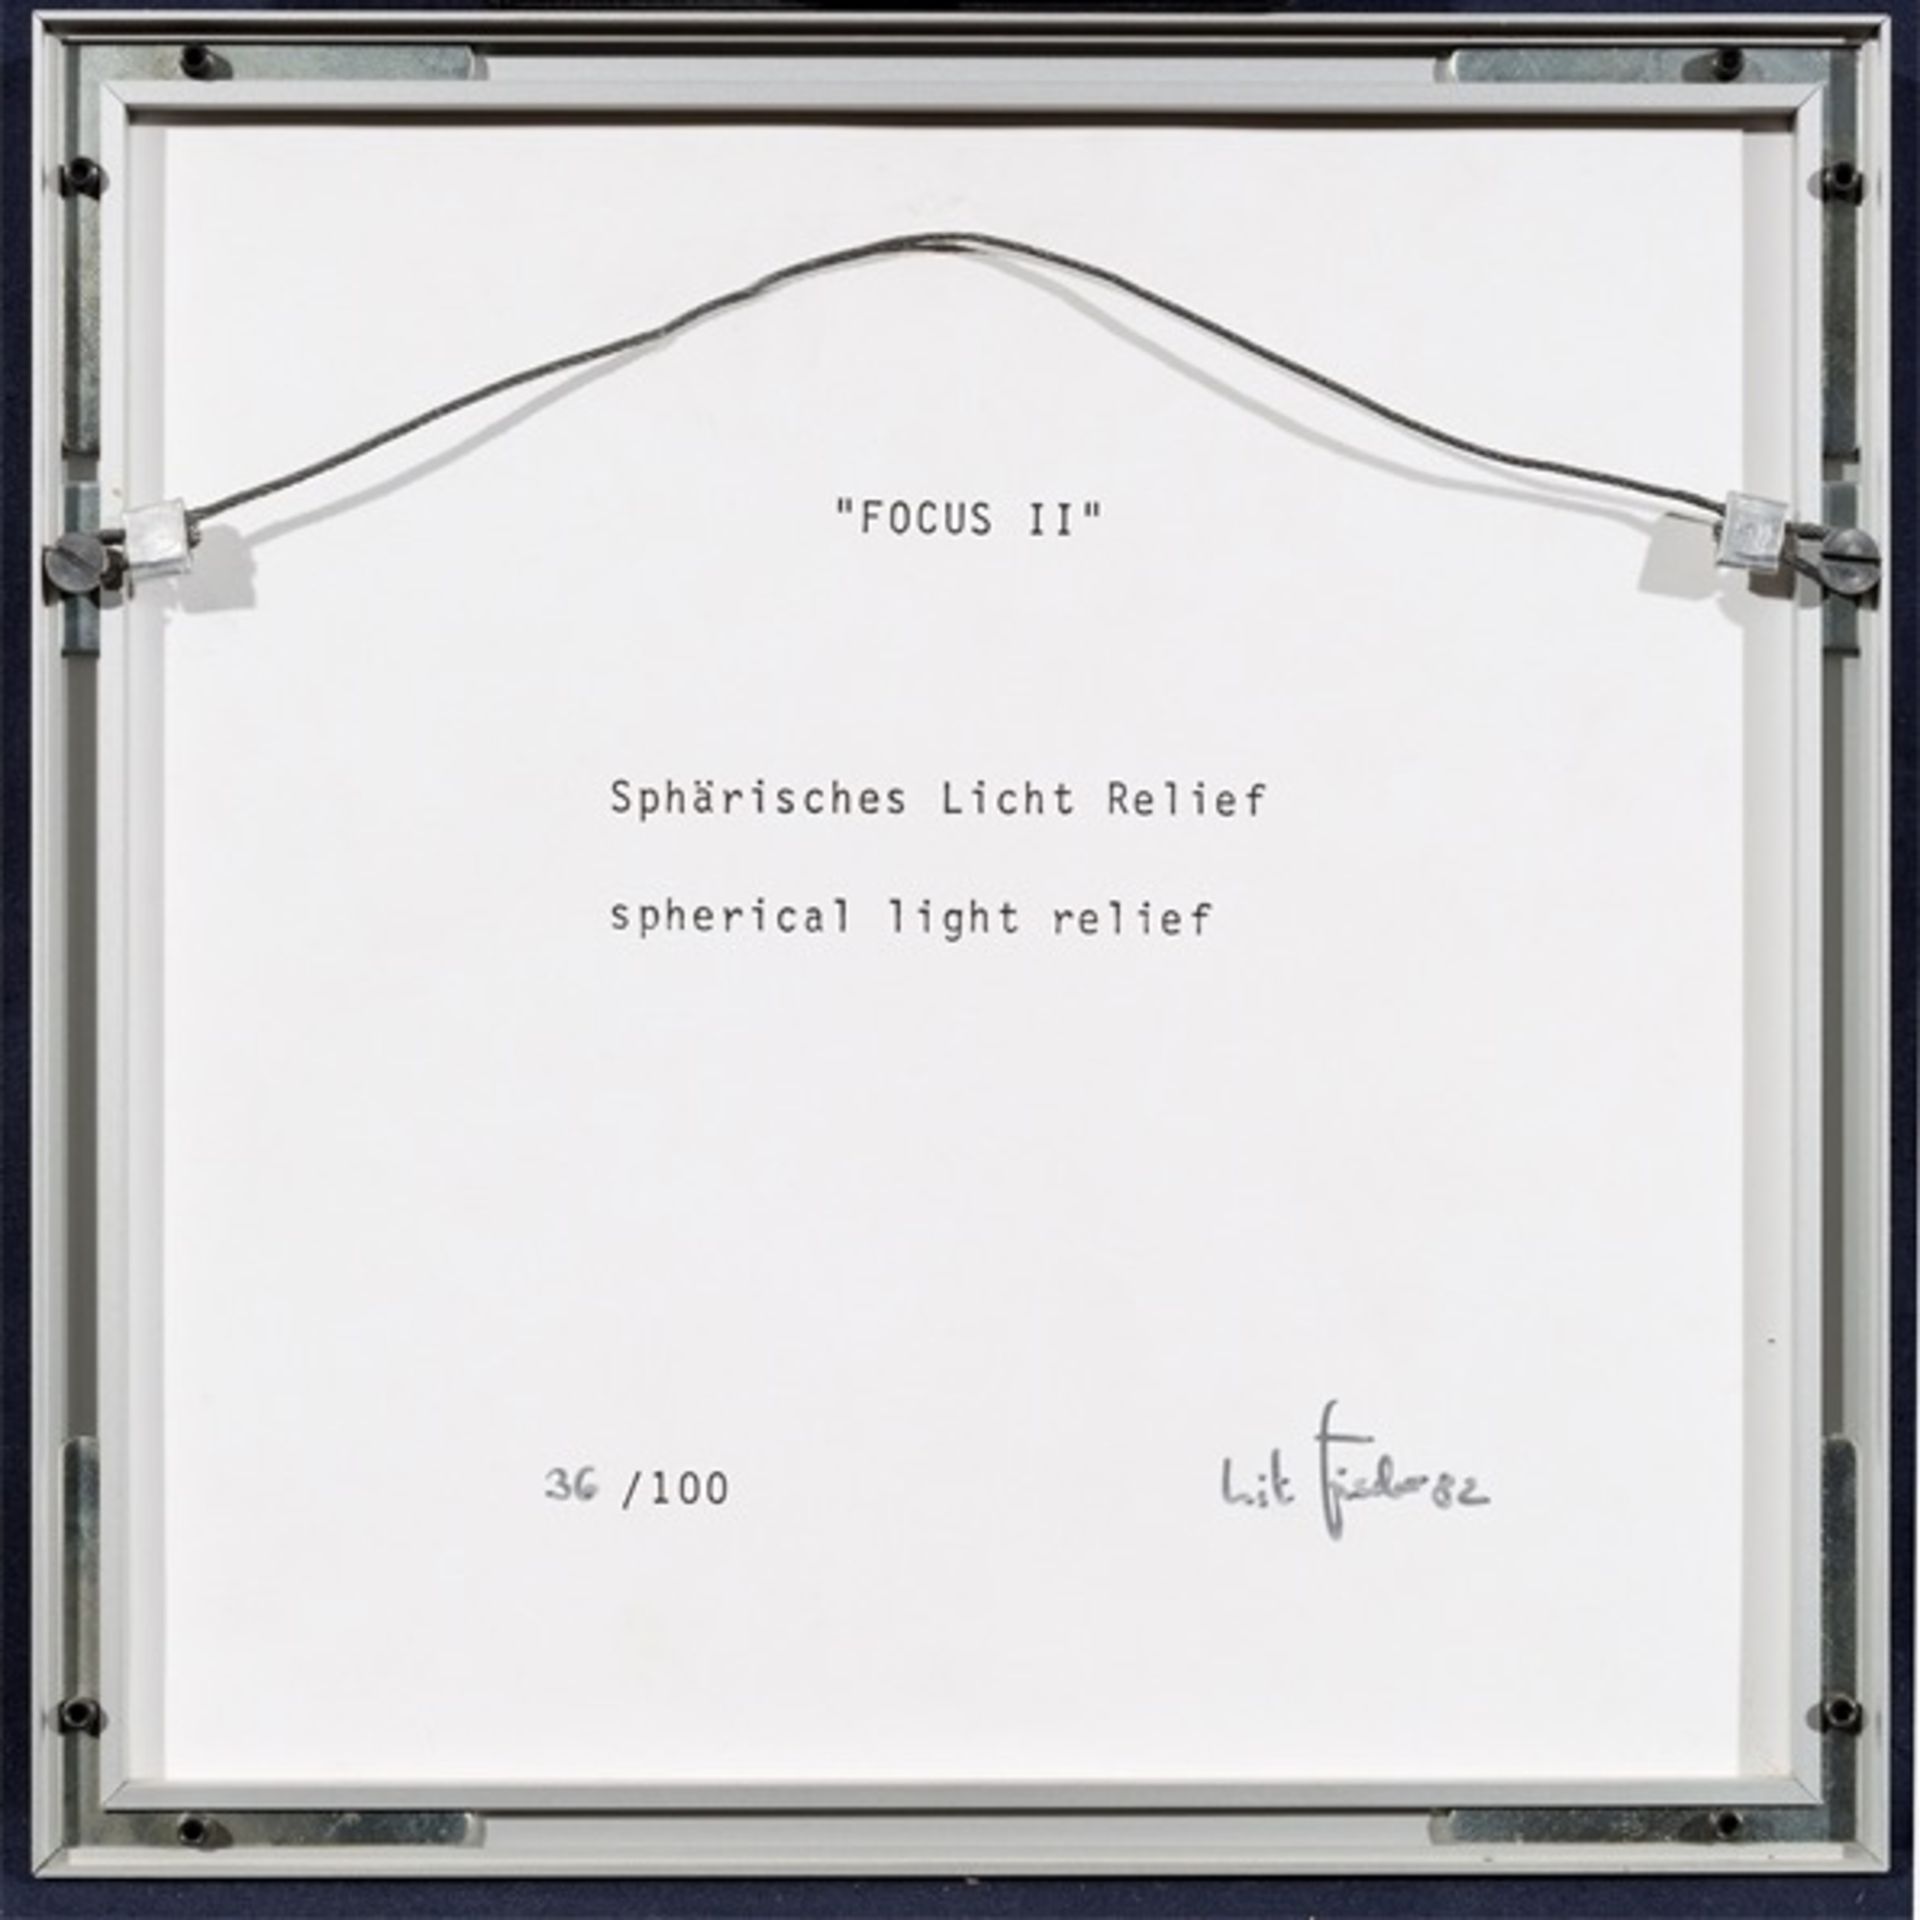 Jürgen LIT Fischer. ”Focus II” (spherical light relief). 1982 - Image 2 of 3